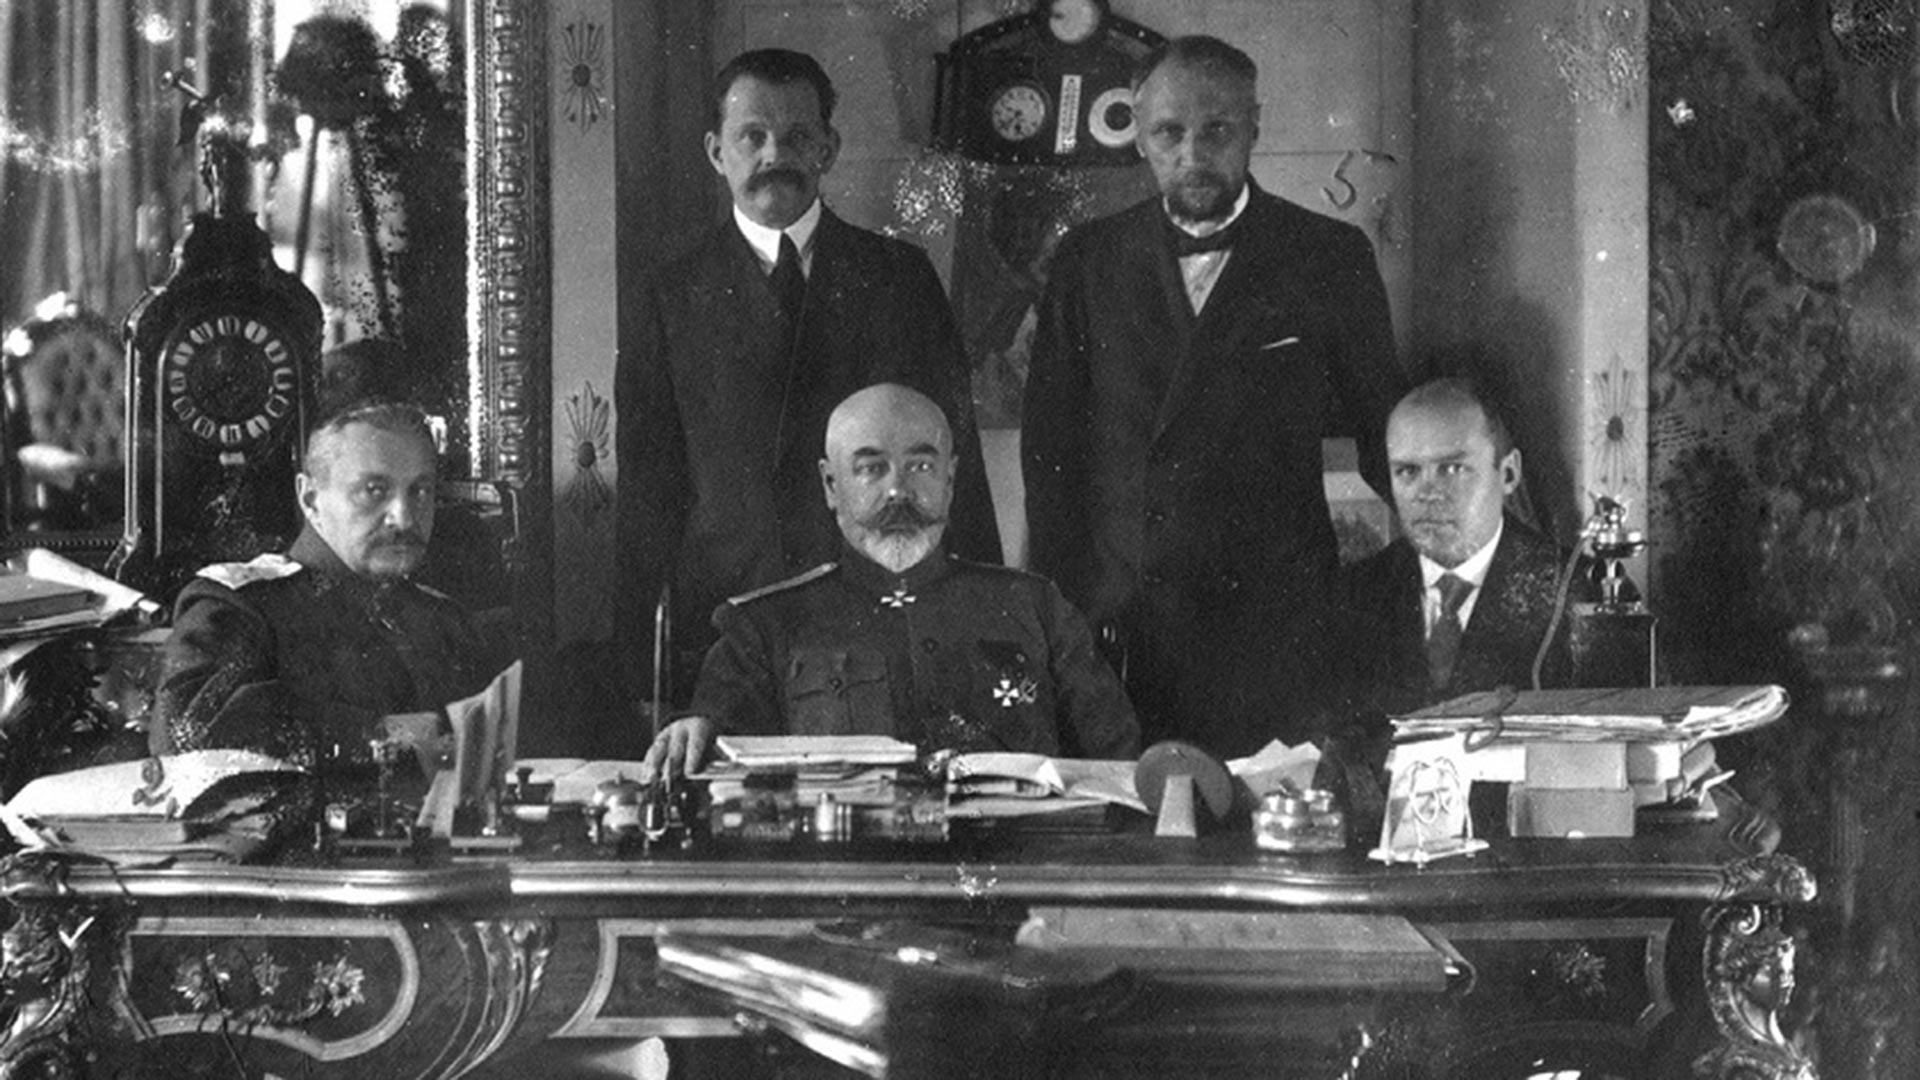 Estate 1919, Taganrog. Da sinistra: il generale I. P. Romanovskij, il generale A. I. Denikin, K. N. Sokolov. In piedi: N. I. Astrov, N. V. Savich